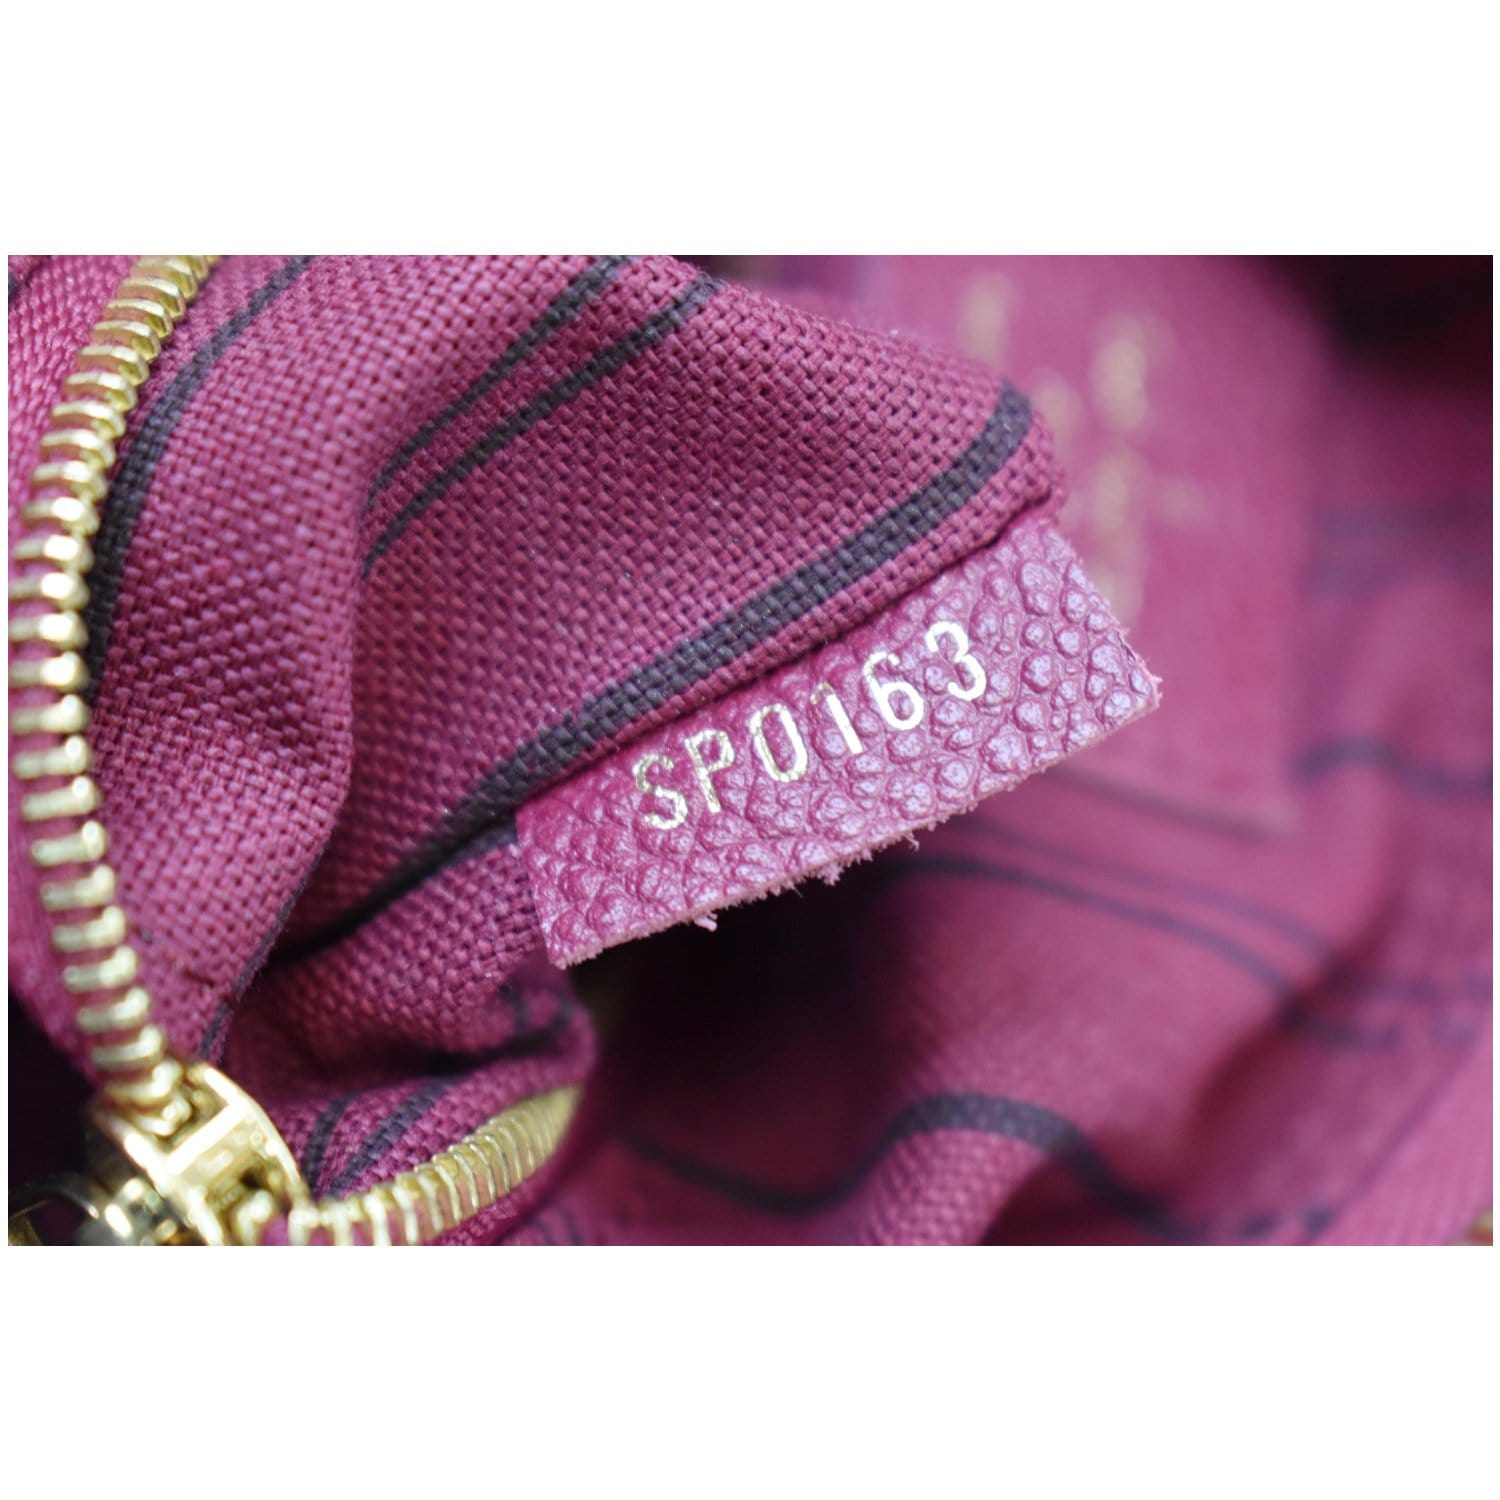 Louis Vuitton Purple Monogram Empreinte Leather Speedy Bandoulière 25 Shoulder  Bag Louis Vuitton